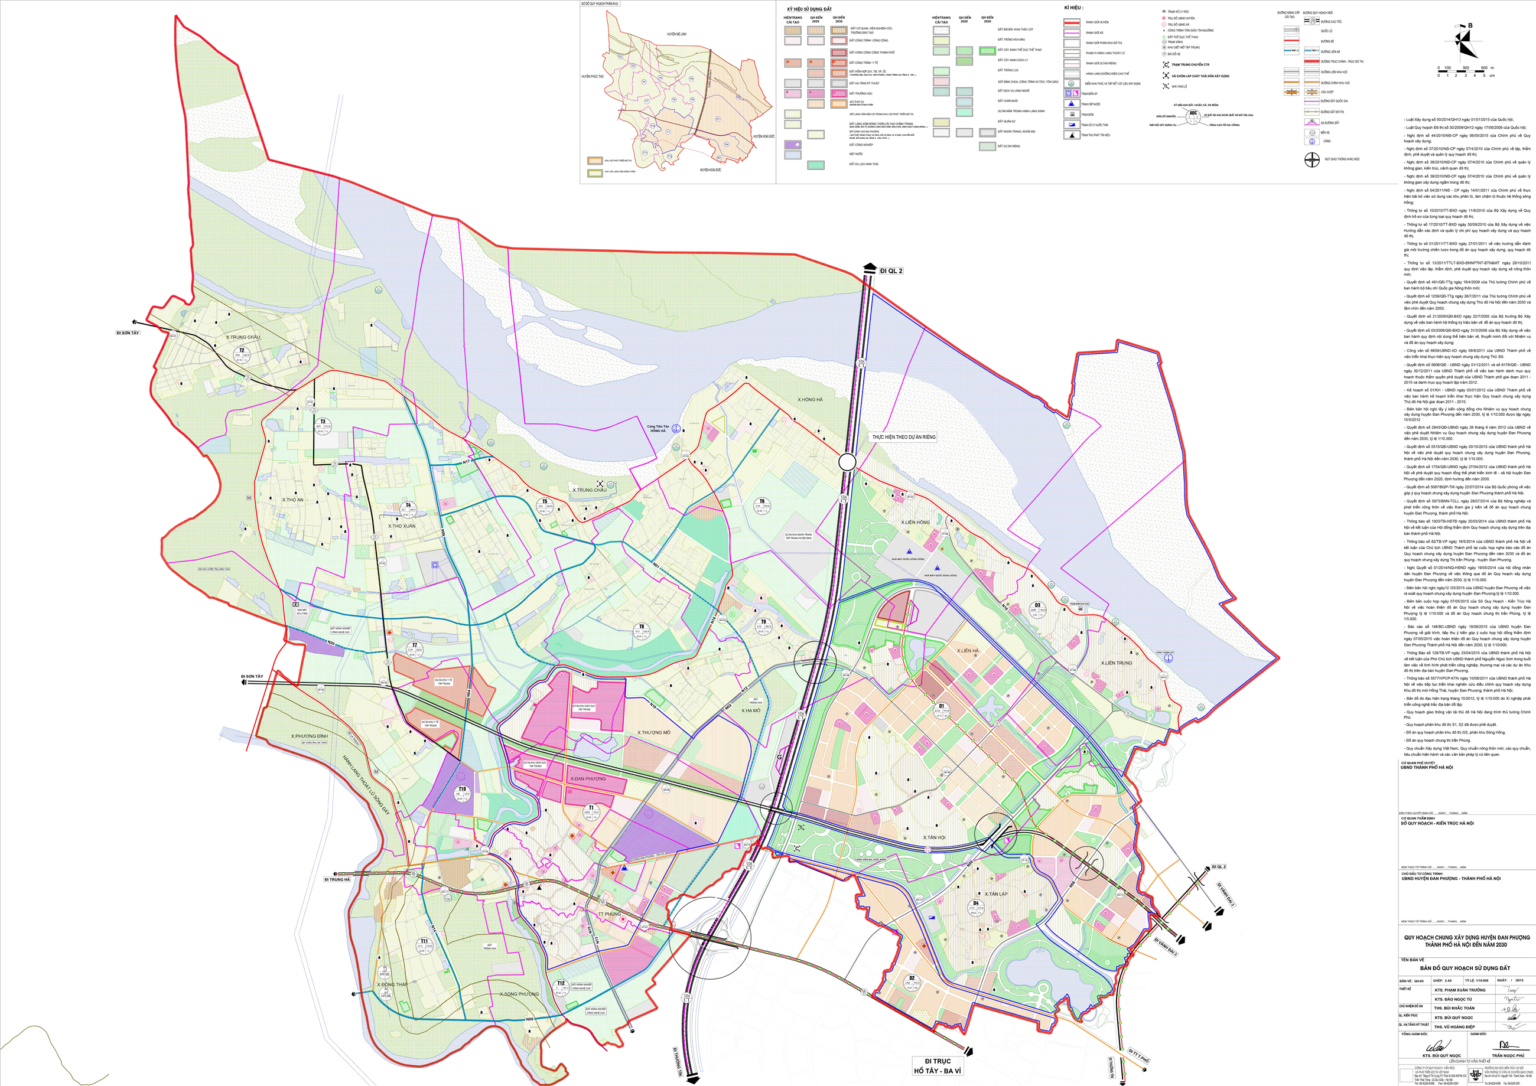 Quy hoạch chi tiết huyện Đan Phượng, Hà Nội